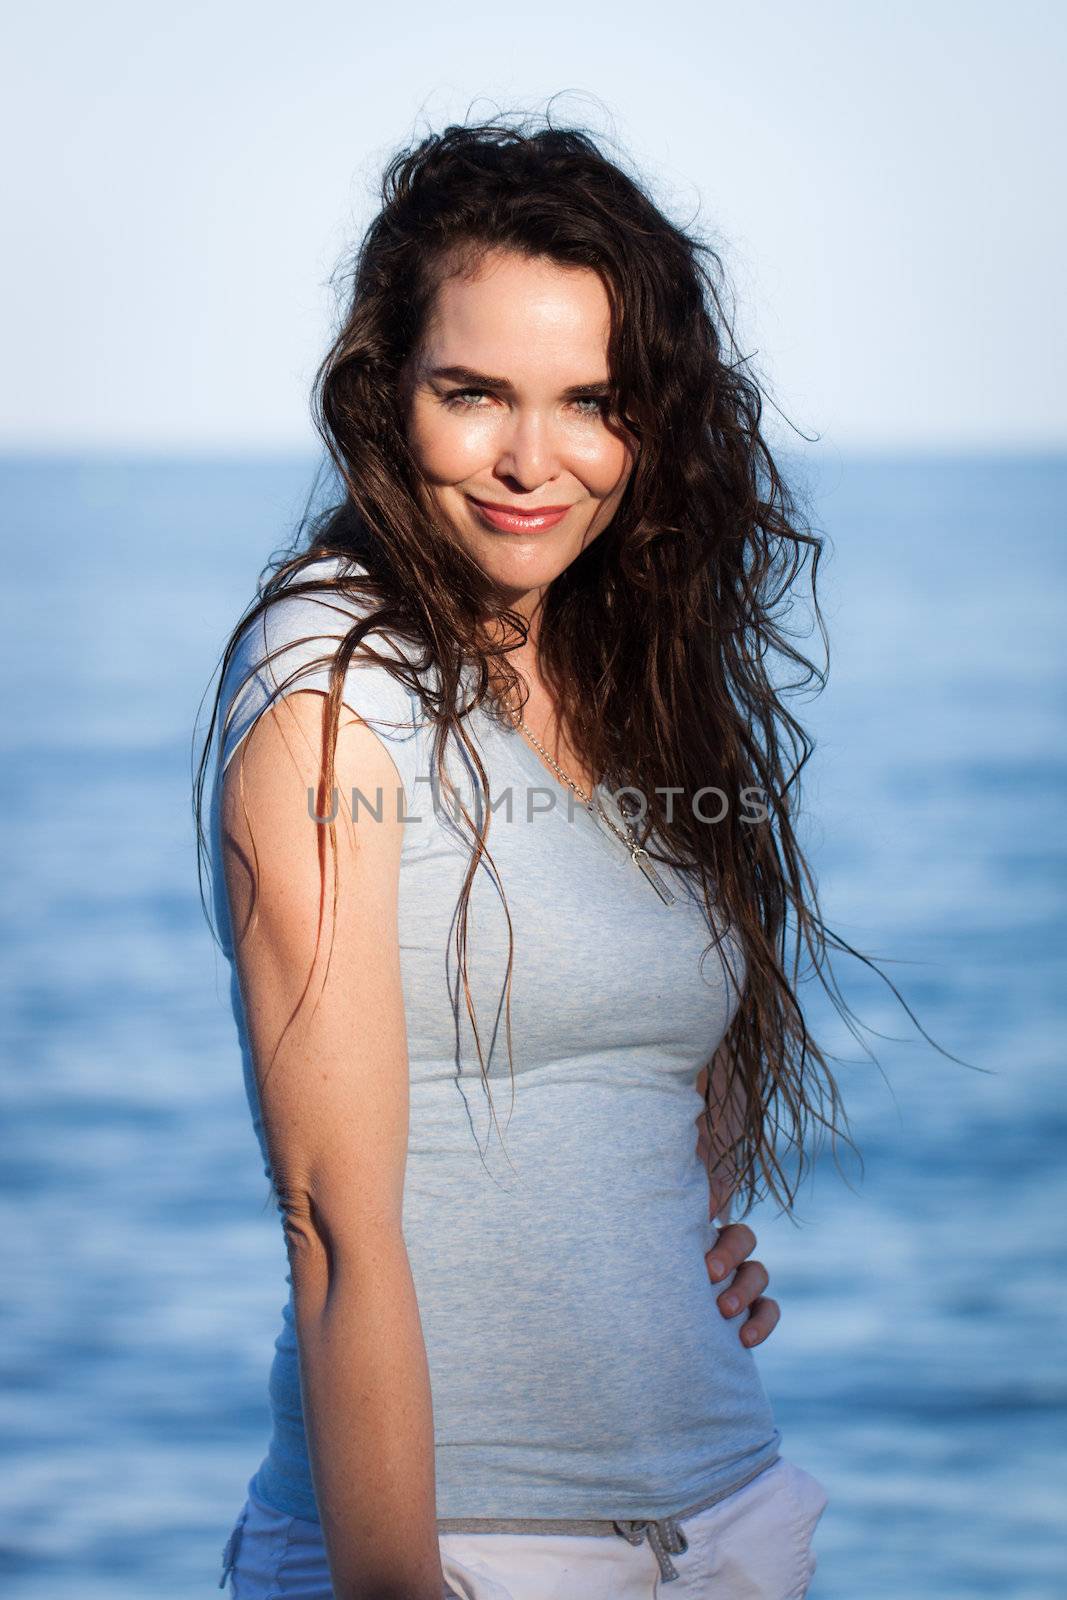 Portrait of attractive woman on beach by Jaykayl